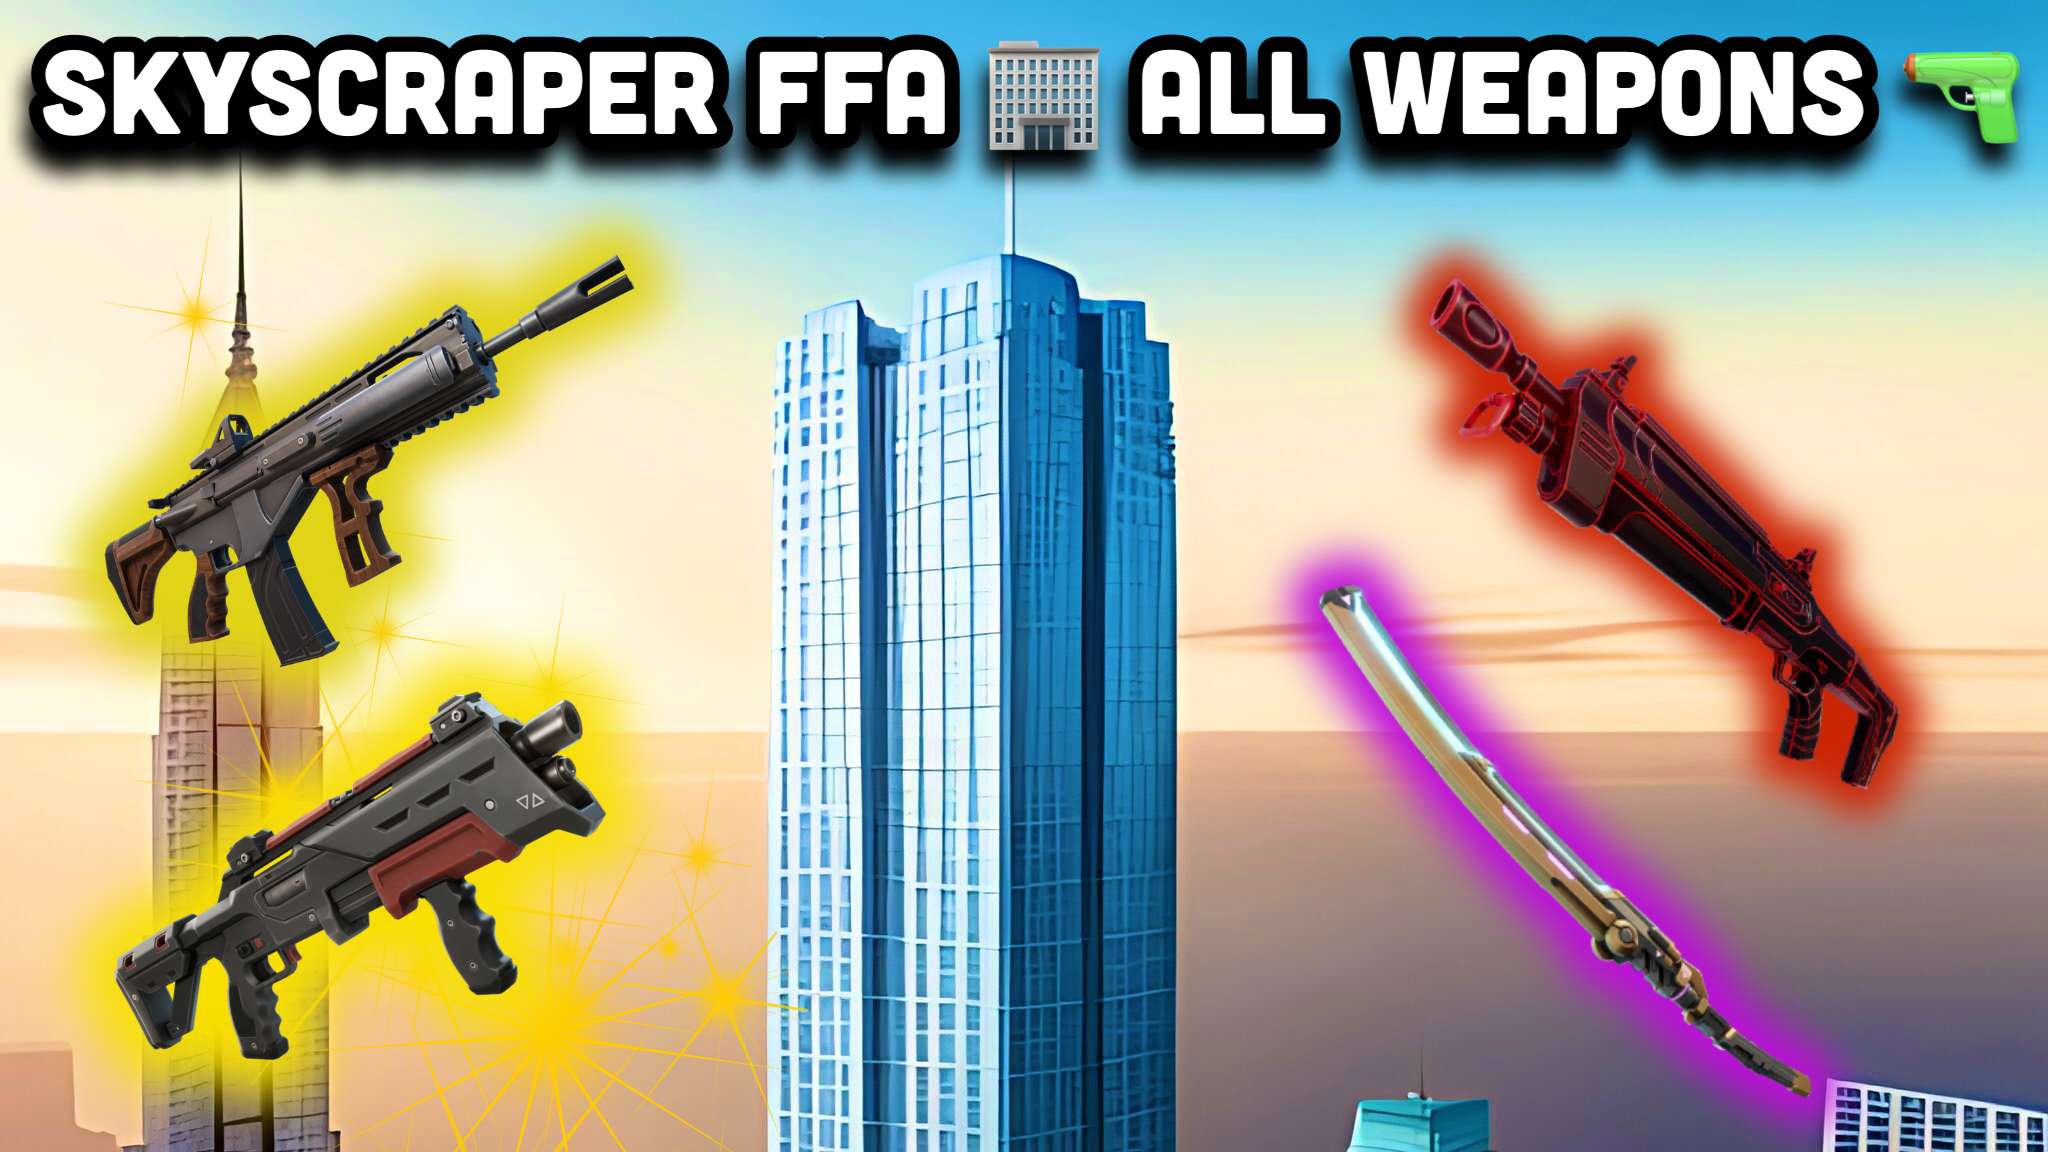 Skyscraper FFA 🏢 All Weapons 🔫